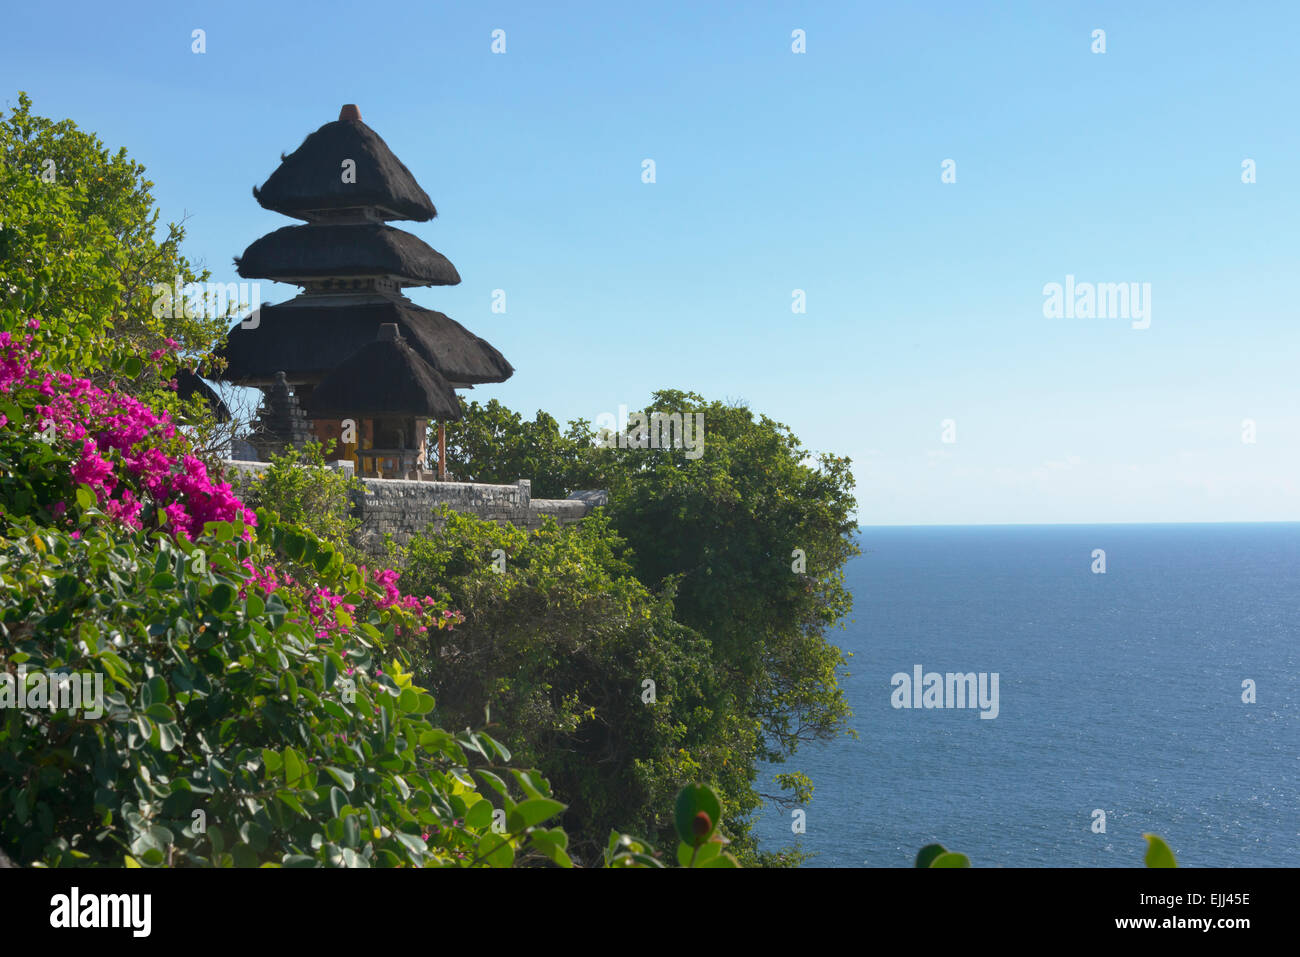 Uluwatu Temple on the cliff, Bali island, Indonesia Stock Photo